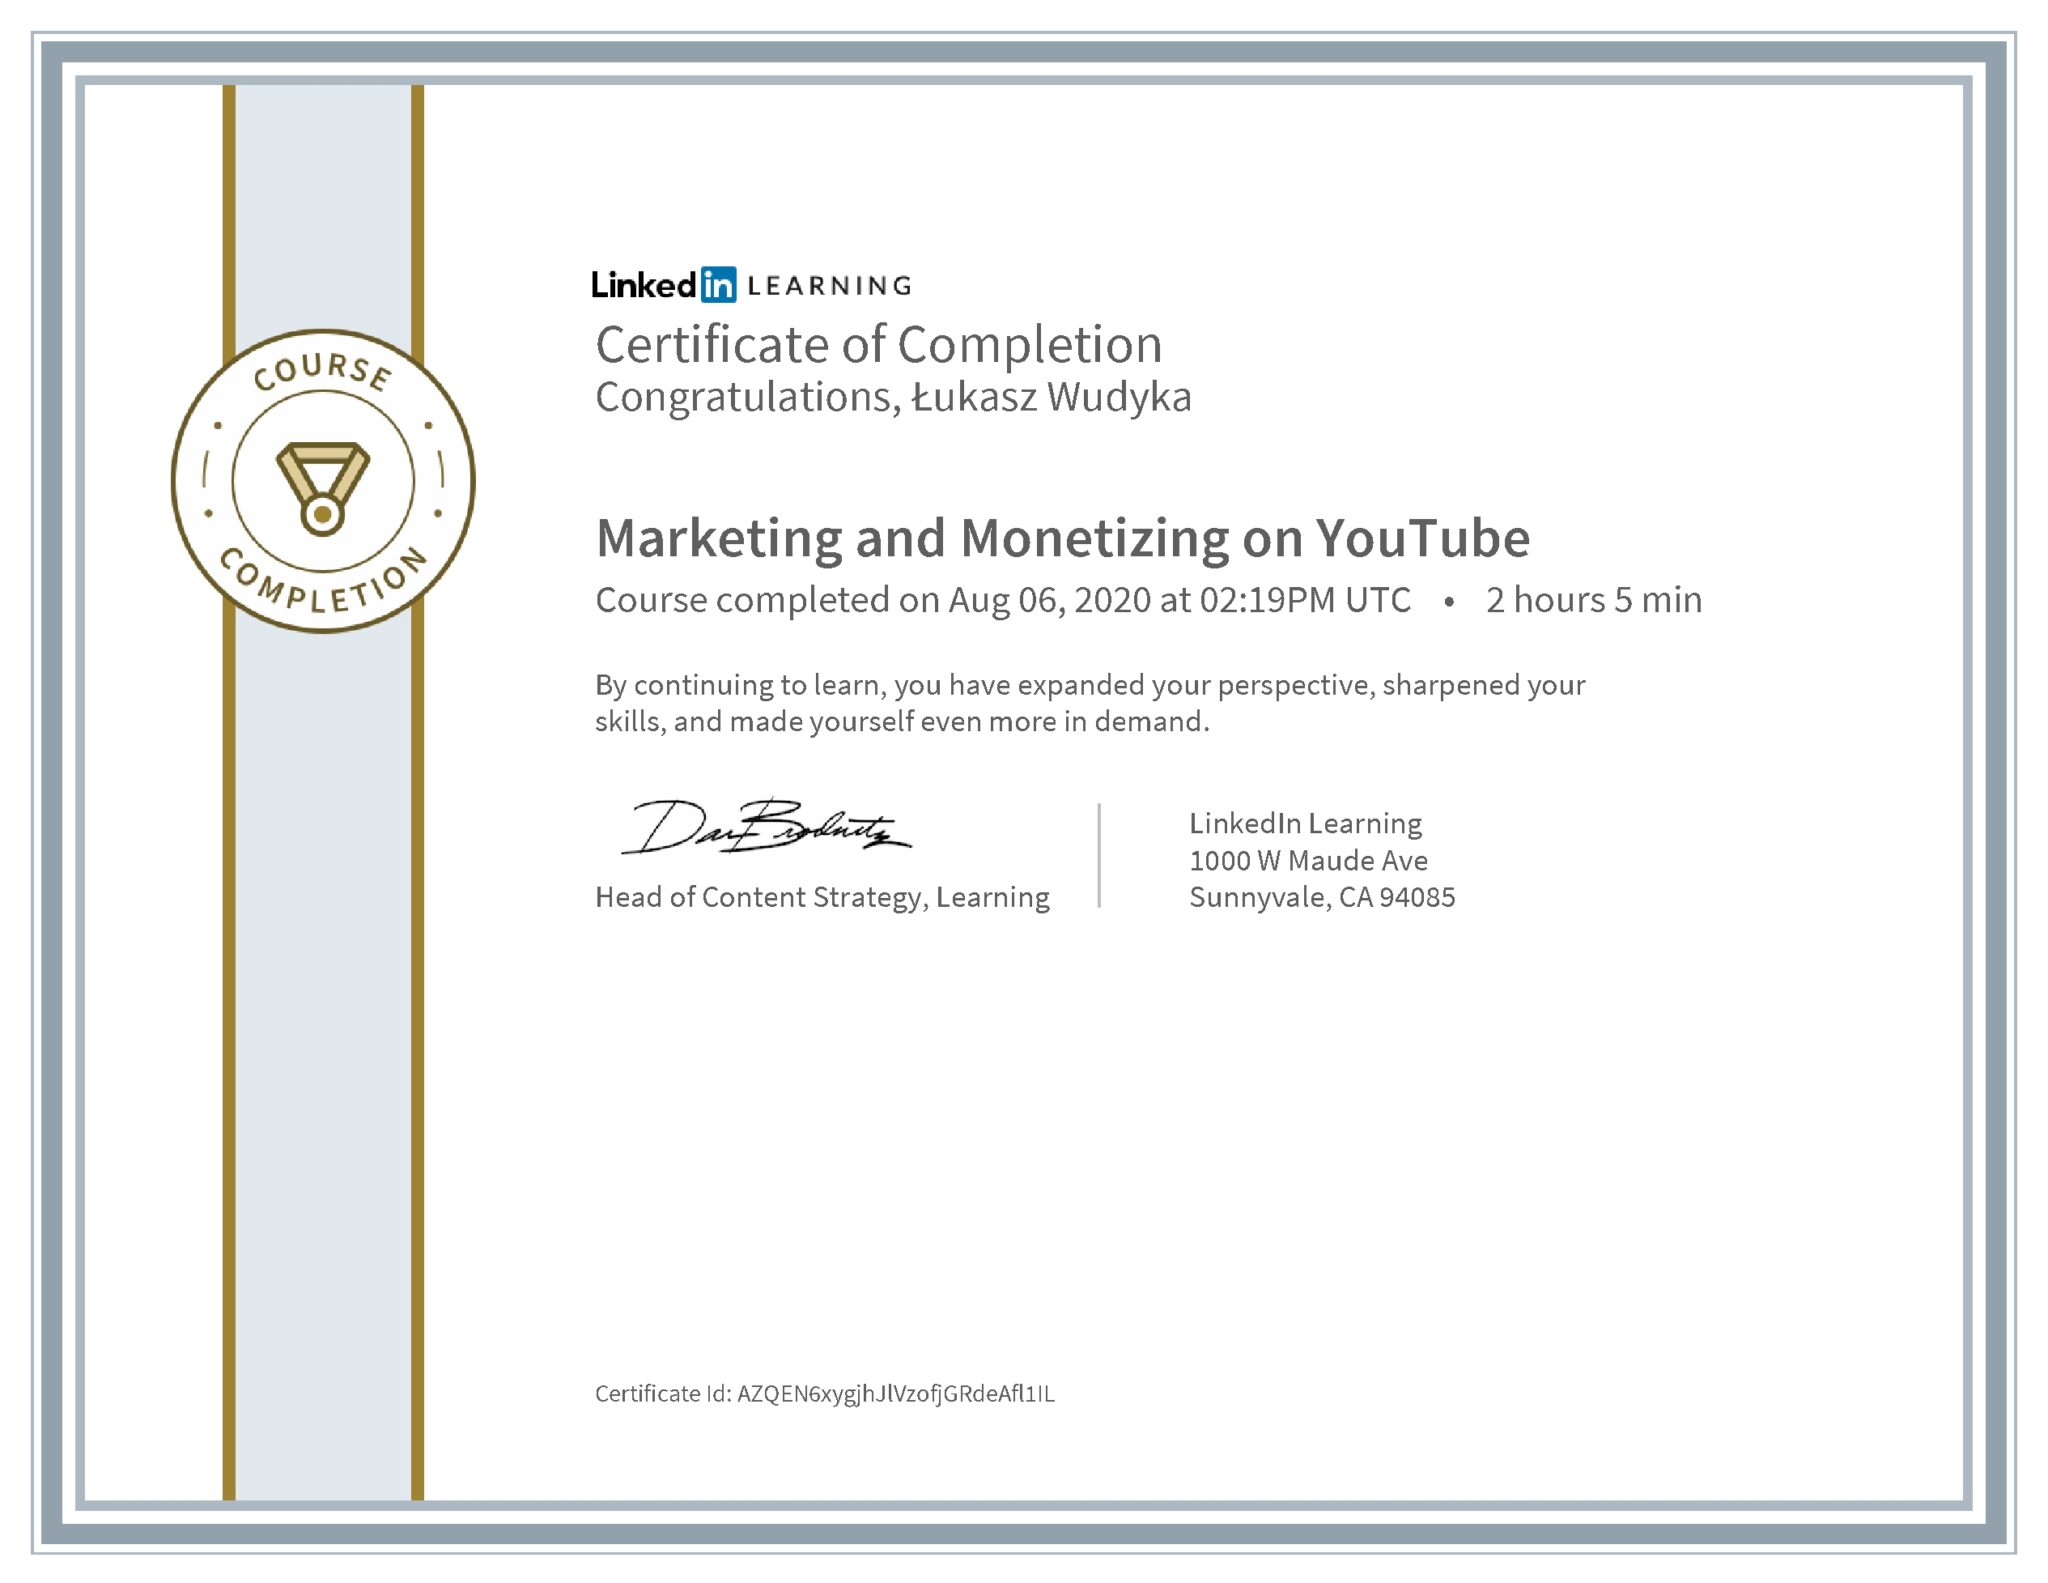 Łukasz Wudyka certyfikat LinkedIn Marketing and Monetizing on YouTube